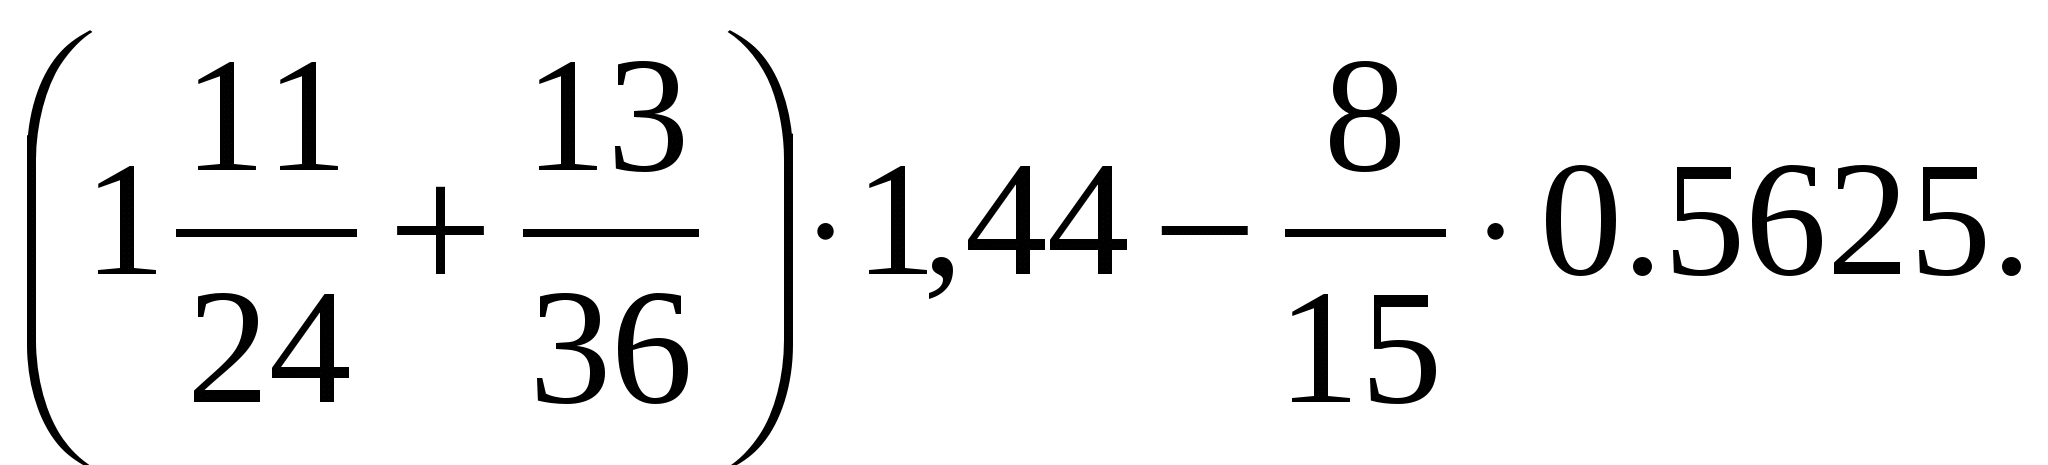 1 11 25 решение. (1 11/24+13/36) Х1,44-8/15 х0,5625. 1 11/24+13/36 1.44-8/15 0.5625 Решение. (1 11/24 + 13/36) Х 1,44 - 8/15 Х 0,5625 = 2,32.. Математика 6 класс (1 11/24 +13/36)*1,44-8/15*0,5625.